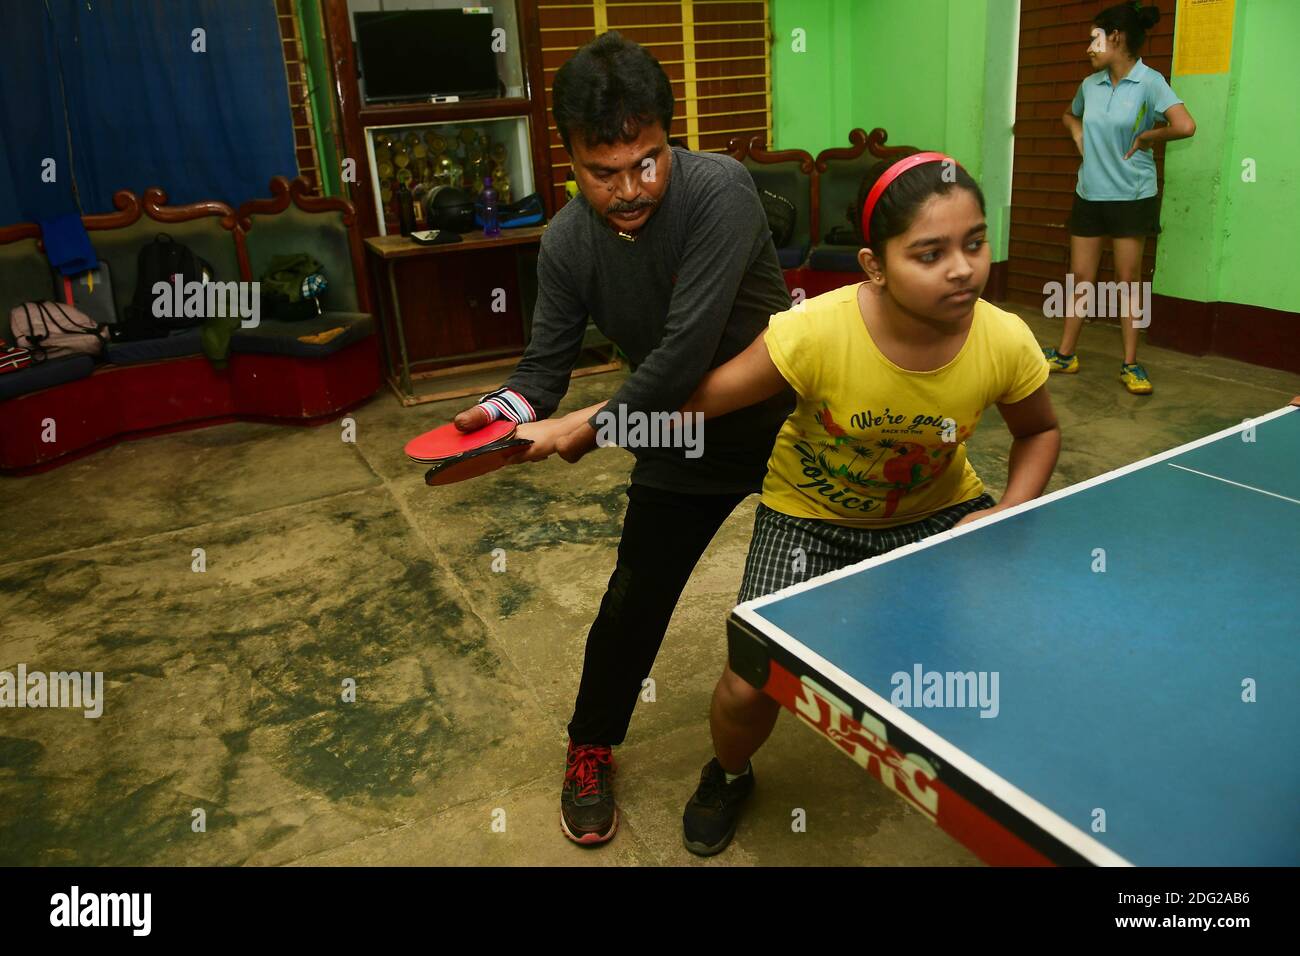 Kajol Dey, un joueur et entraîneur de tennis de table handicapé de 49 ans,  est vu coacher une jeune fille dans son camp d'entraînement à l'occasion de  la Journée internationale des personnes